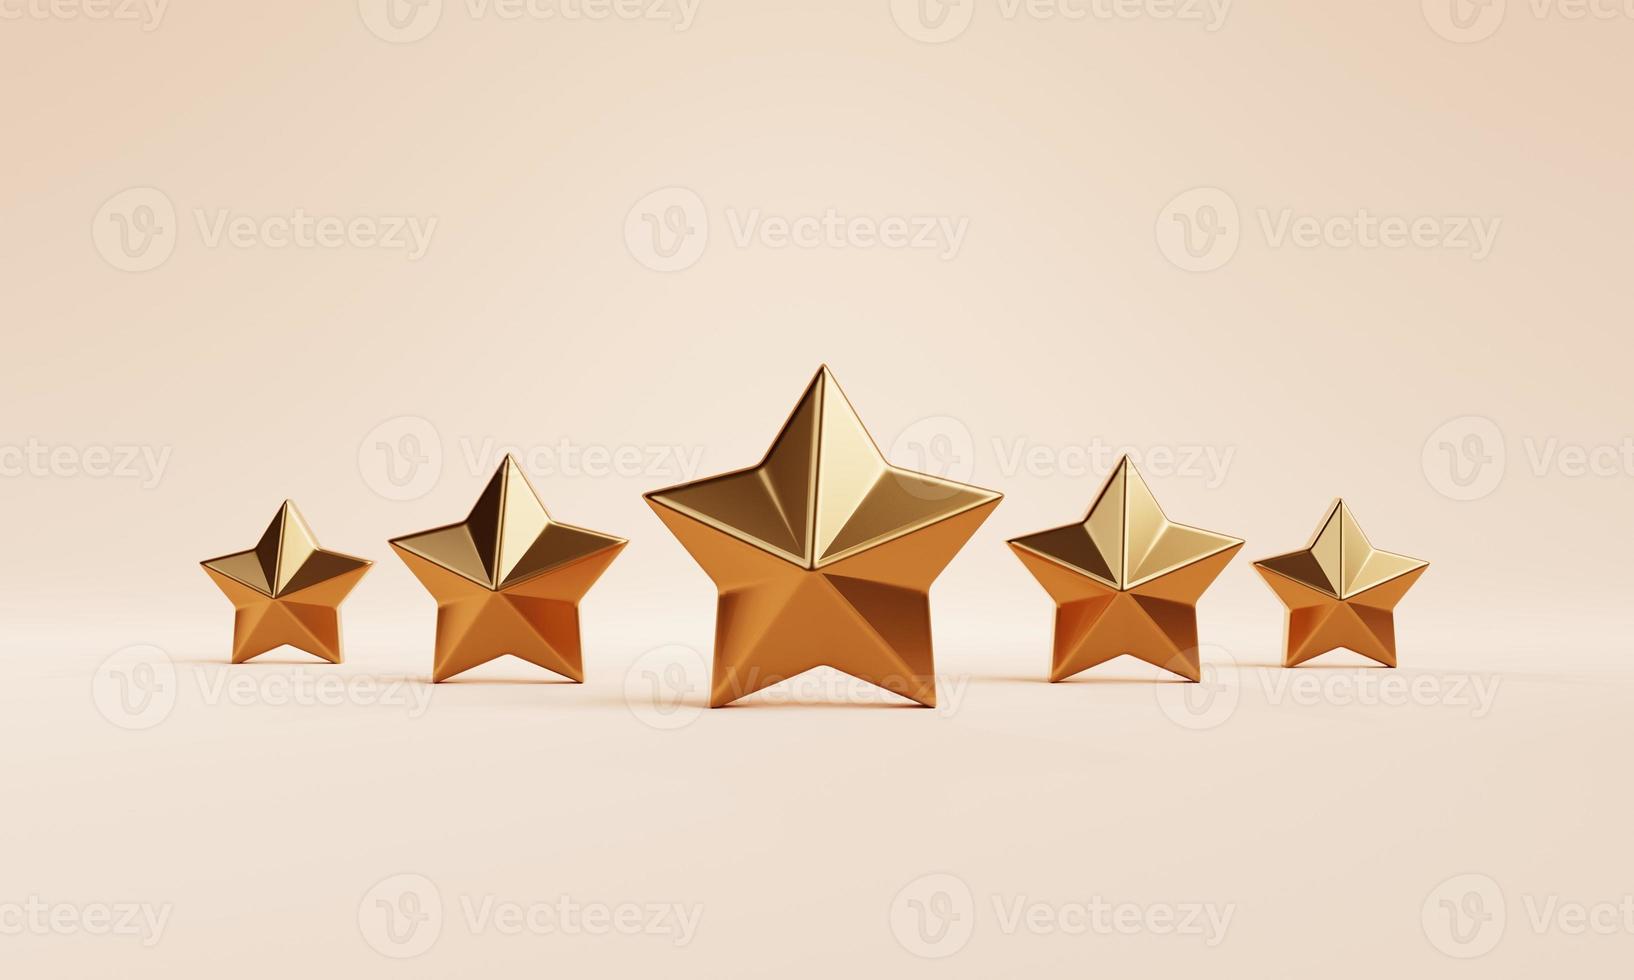 Cinco estrellas doradas votan por rango de retroalimentación sobre fondo naranja. concepto de encuesta de opinión y marketing. representación de ilustración 3d foto